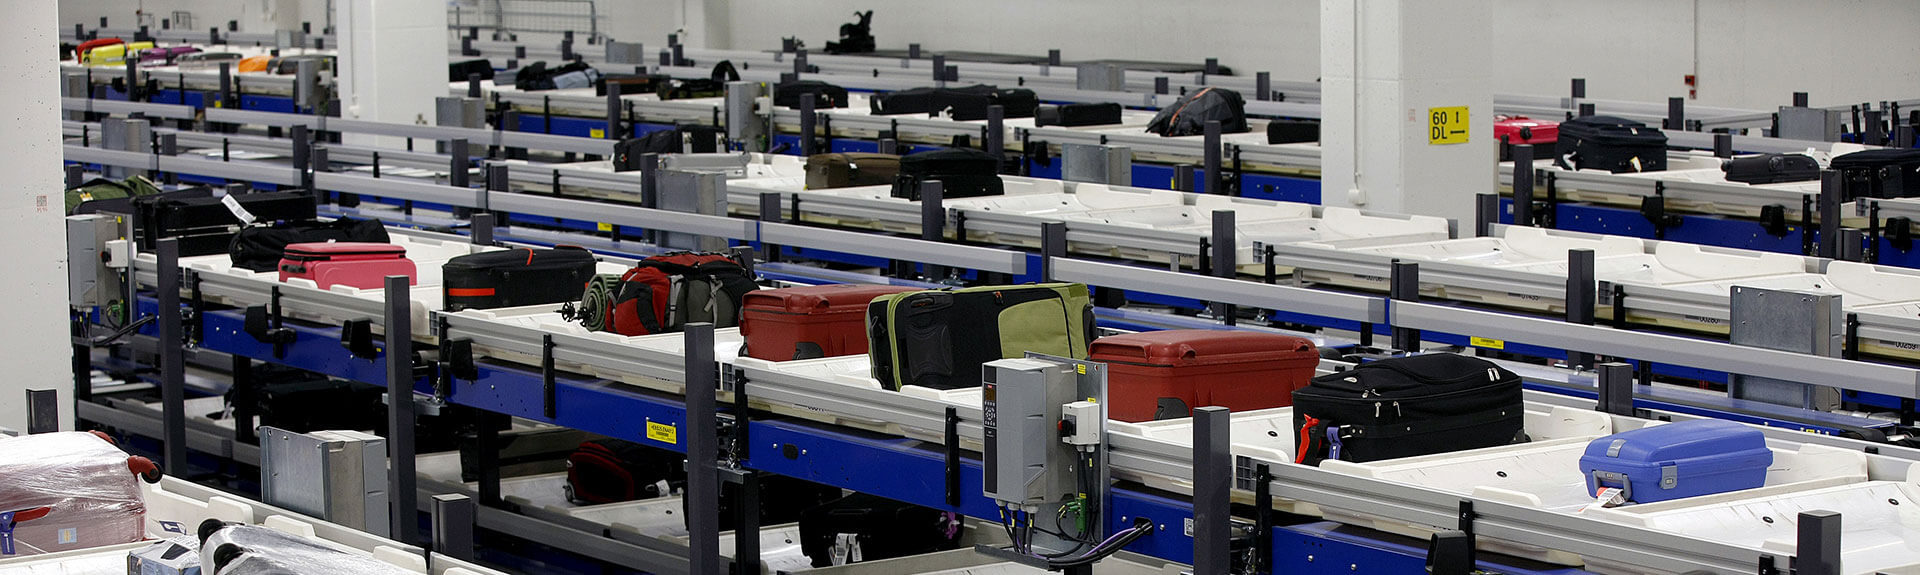 Line based baggage storage | Airport